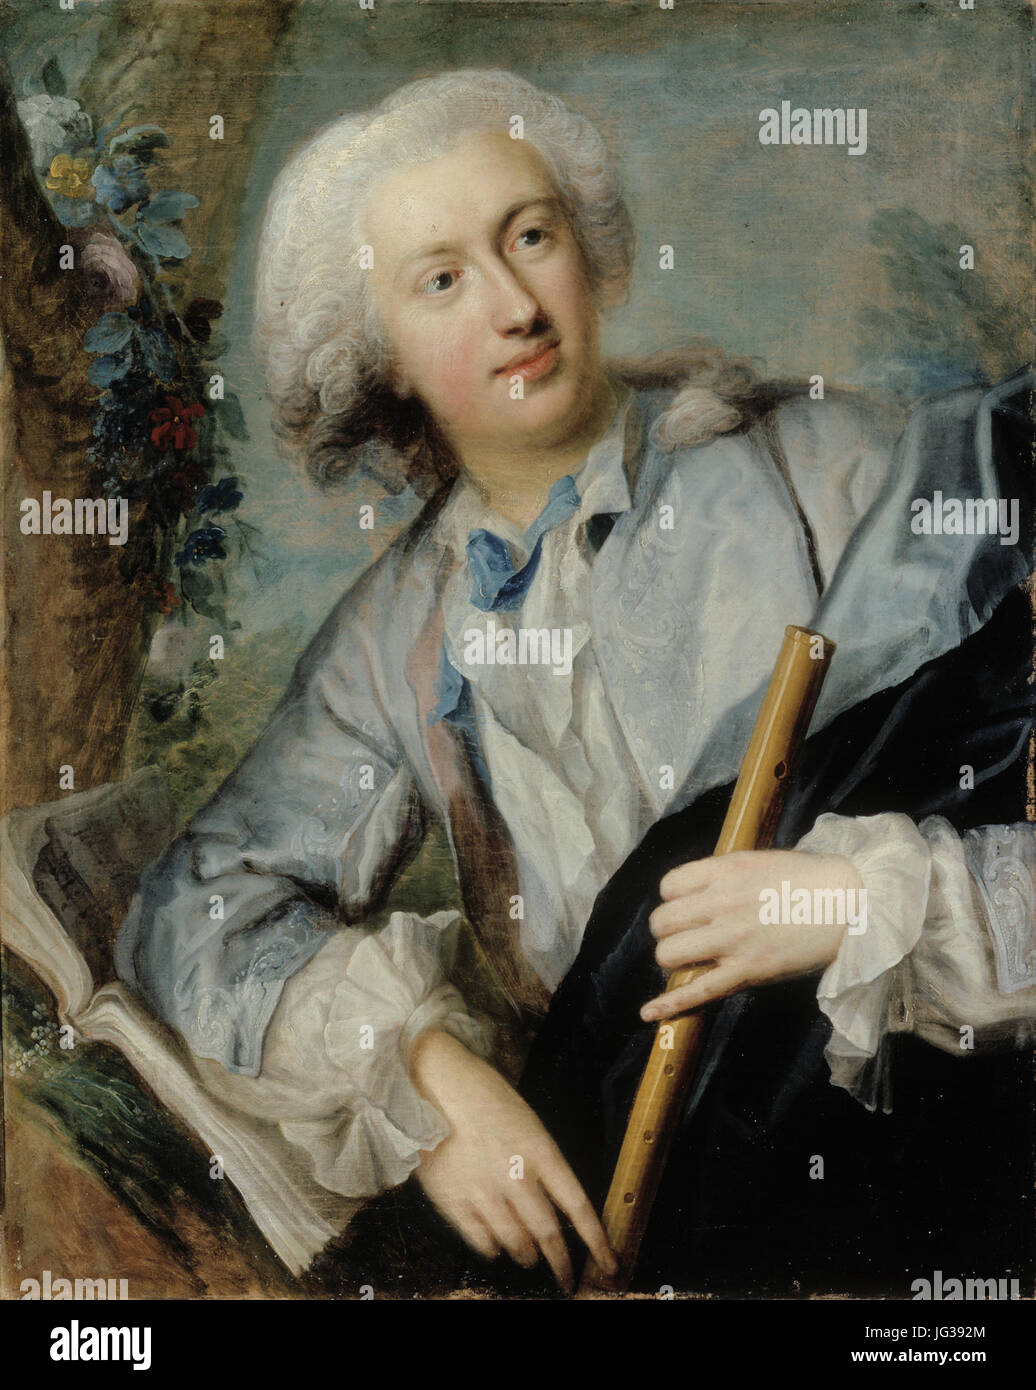 Lorens Pasch, l'Aîné - vanhempi - den äldre (1702E288921766)- Joueur de flûte - Huilunsoittaja Flöjtspelare - (29433099636) Banque D'Images